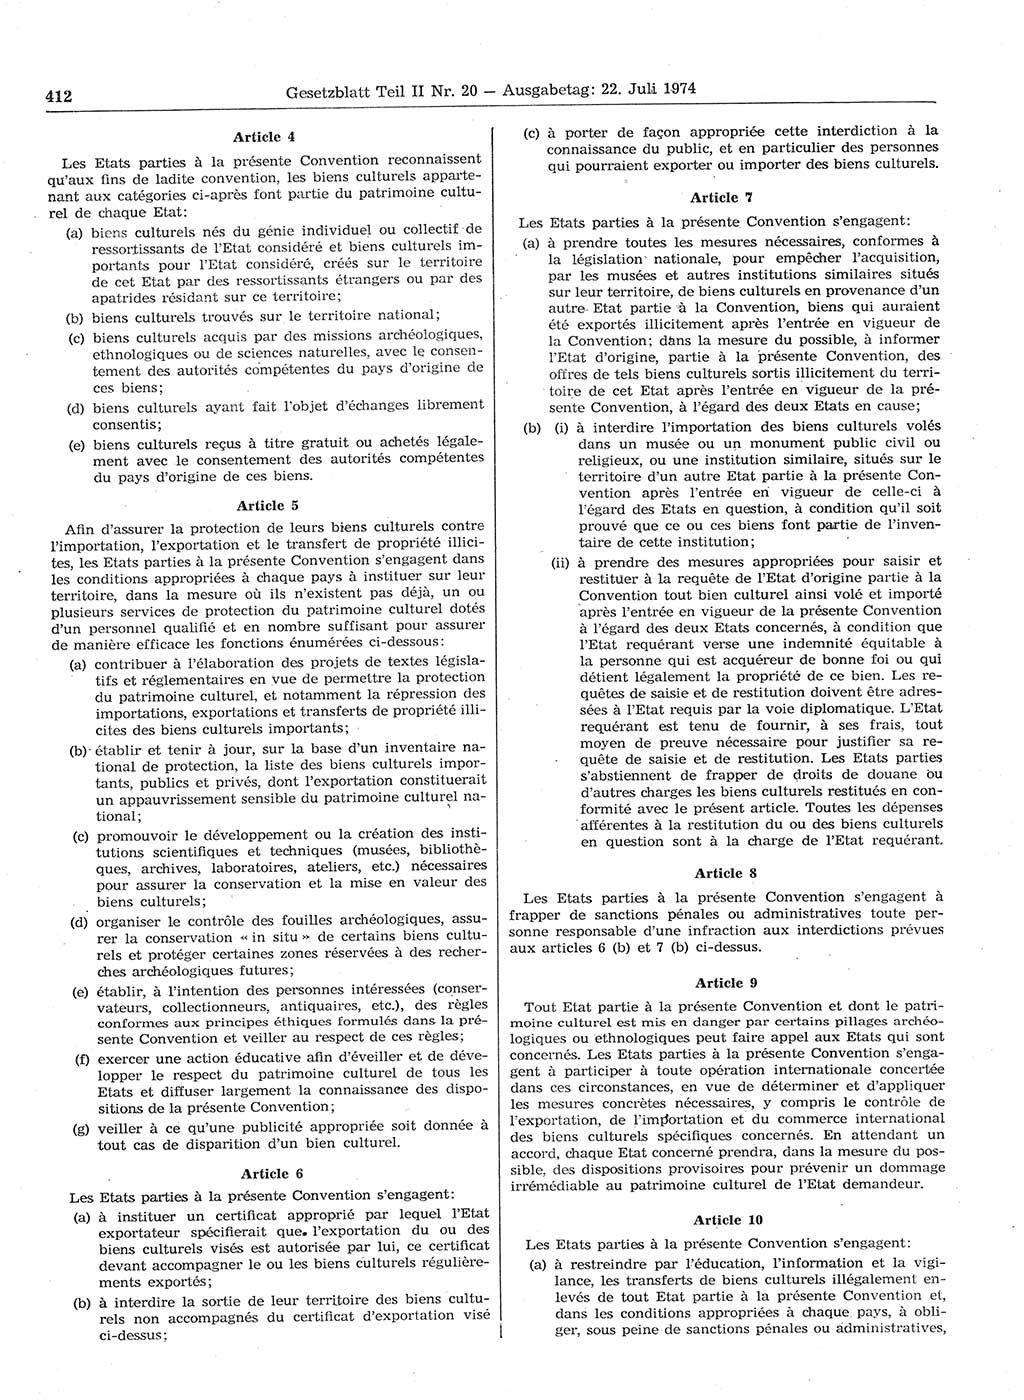 Gesetzblatt (GBl.) der Deutschen Demokratischen Republik (DDR) Teil ⅠⅠ 1974, Seite 412 (GBl. DDR ⅠⅠ 1974, S. 412)